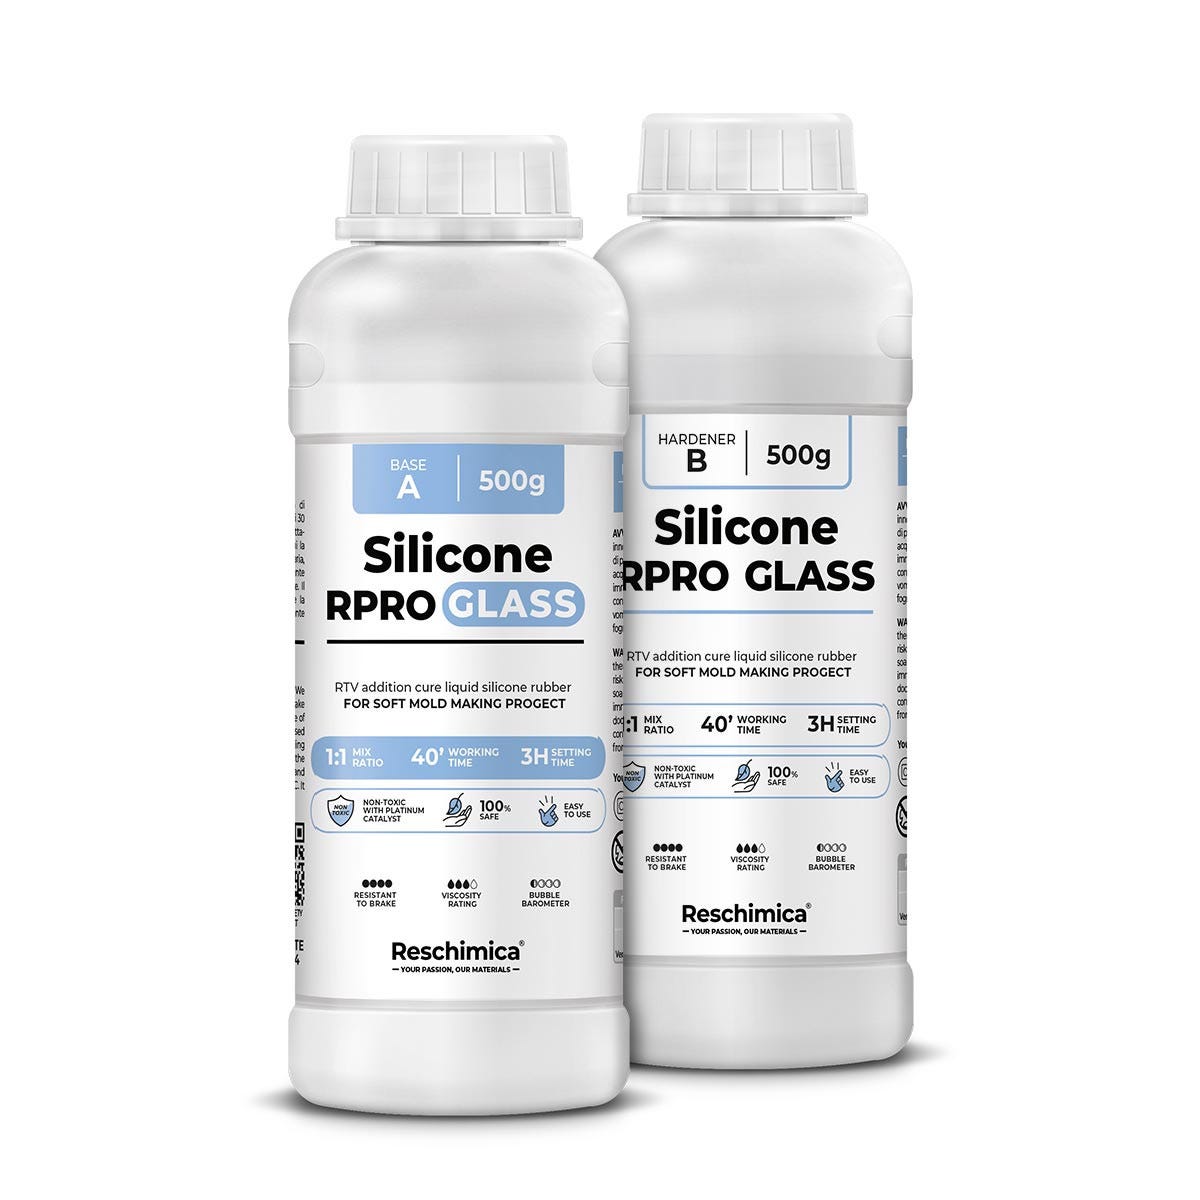 Caoutchouc de silicone translucide 1:1 R PRO GLASS, idéal pour les